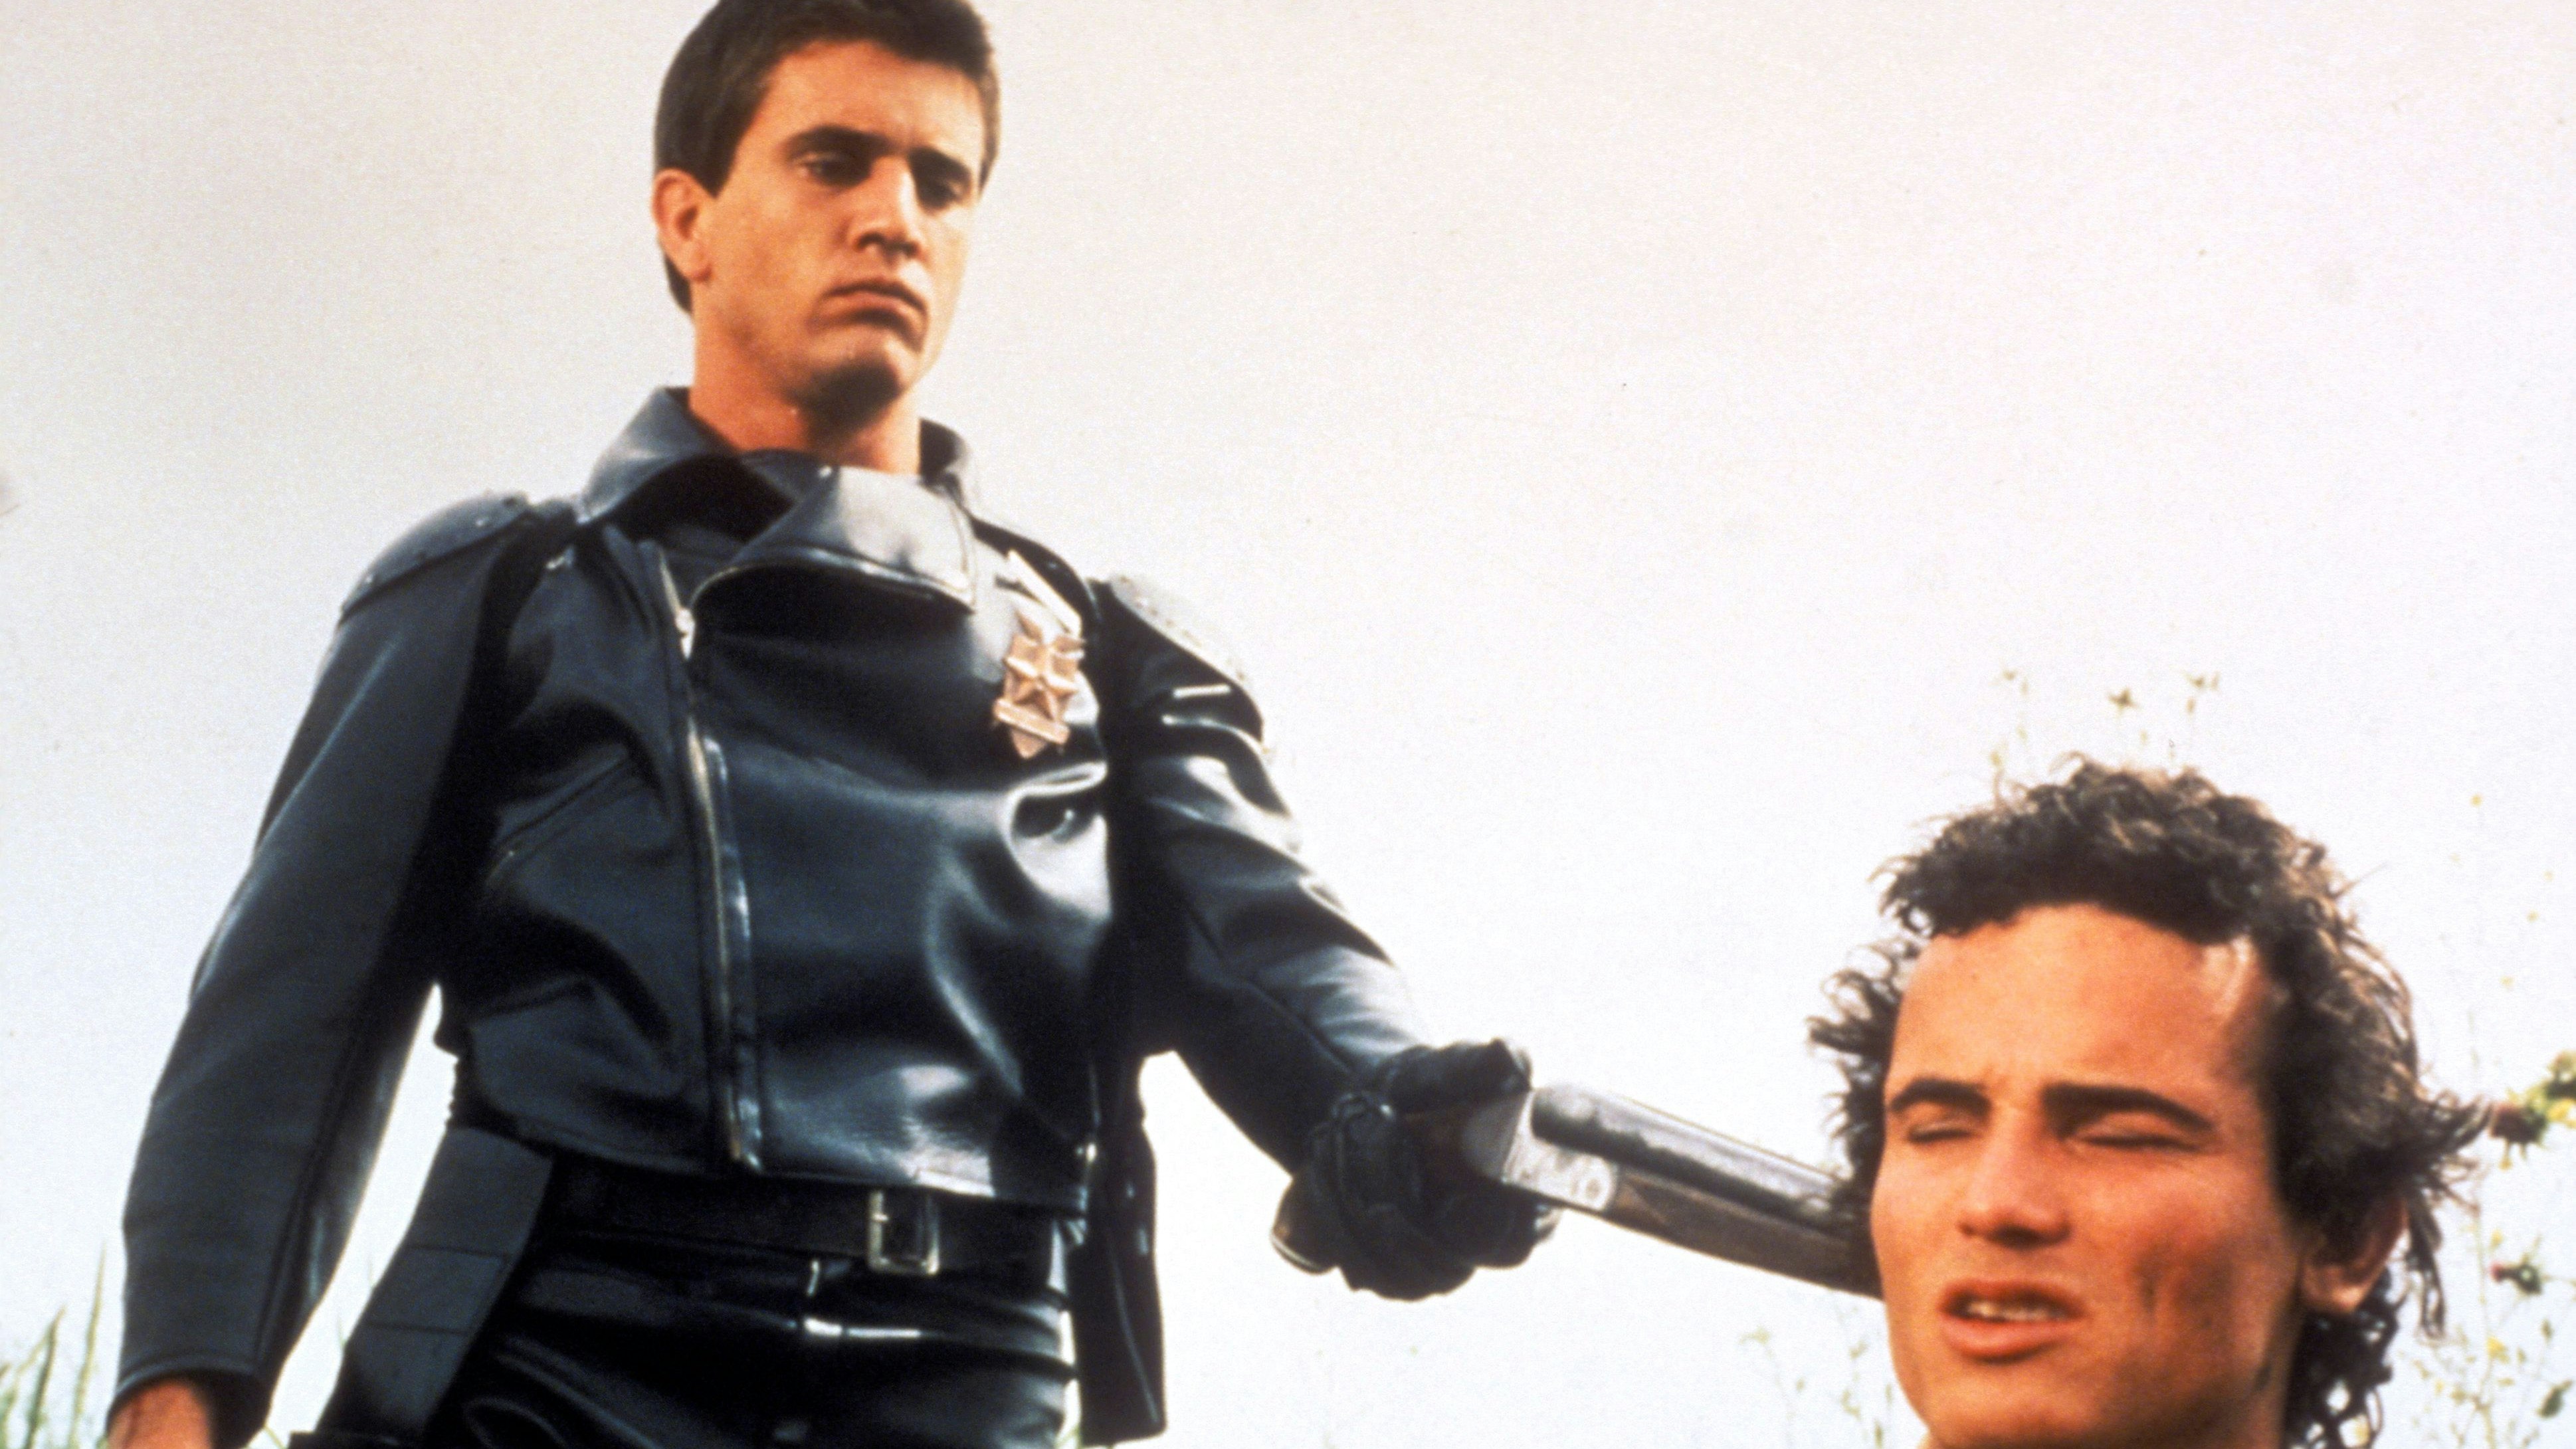 Startschuss einer Weltkarriere – und eines Kino-Mythos: "Mad Max" aus dem Jahr 1979 mit dem blutjungen Mel Gibson als Polizist auf Selbstjustiz-Trip im postapokalyptischen australischen Outback